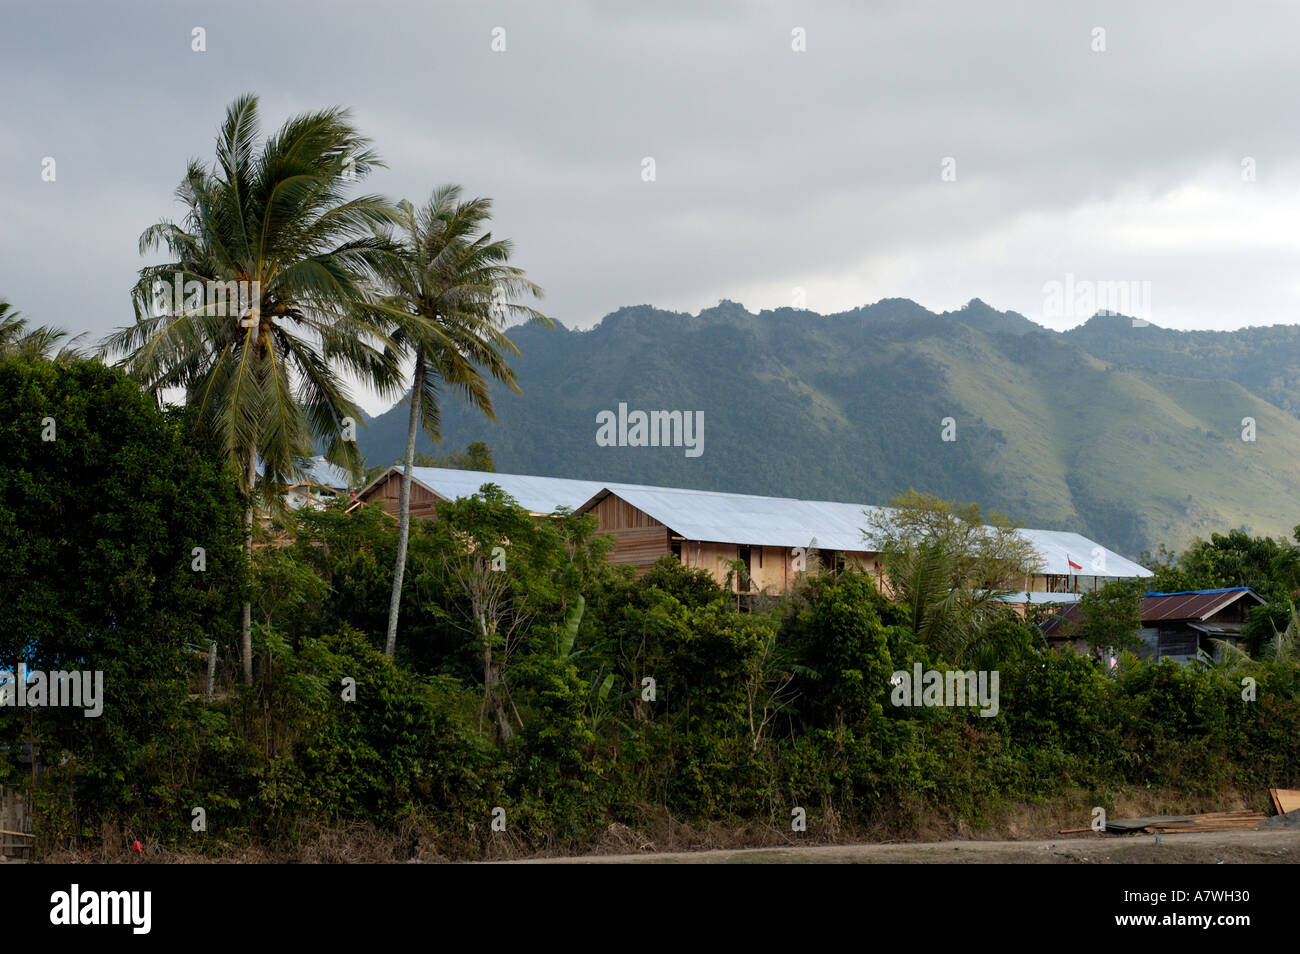 Sumatra indonesia banda aceh Nusa costruzione di caserme per alloggiare le vittime dello tsunami Foto Stock